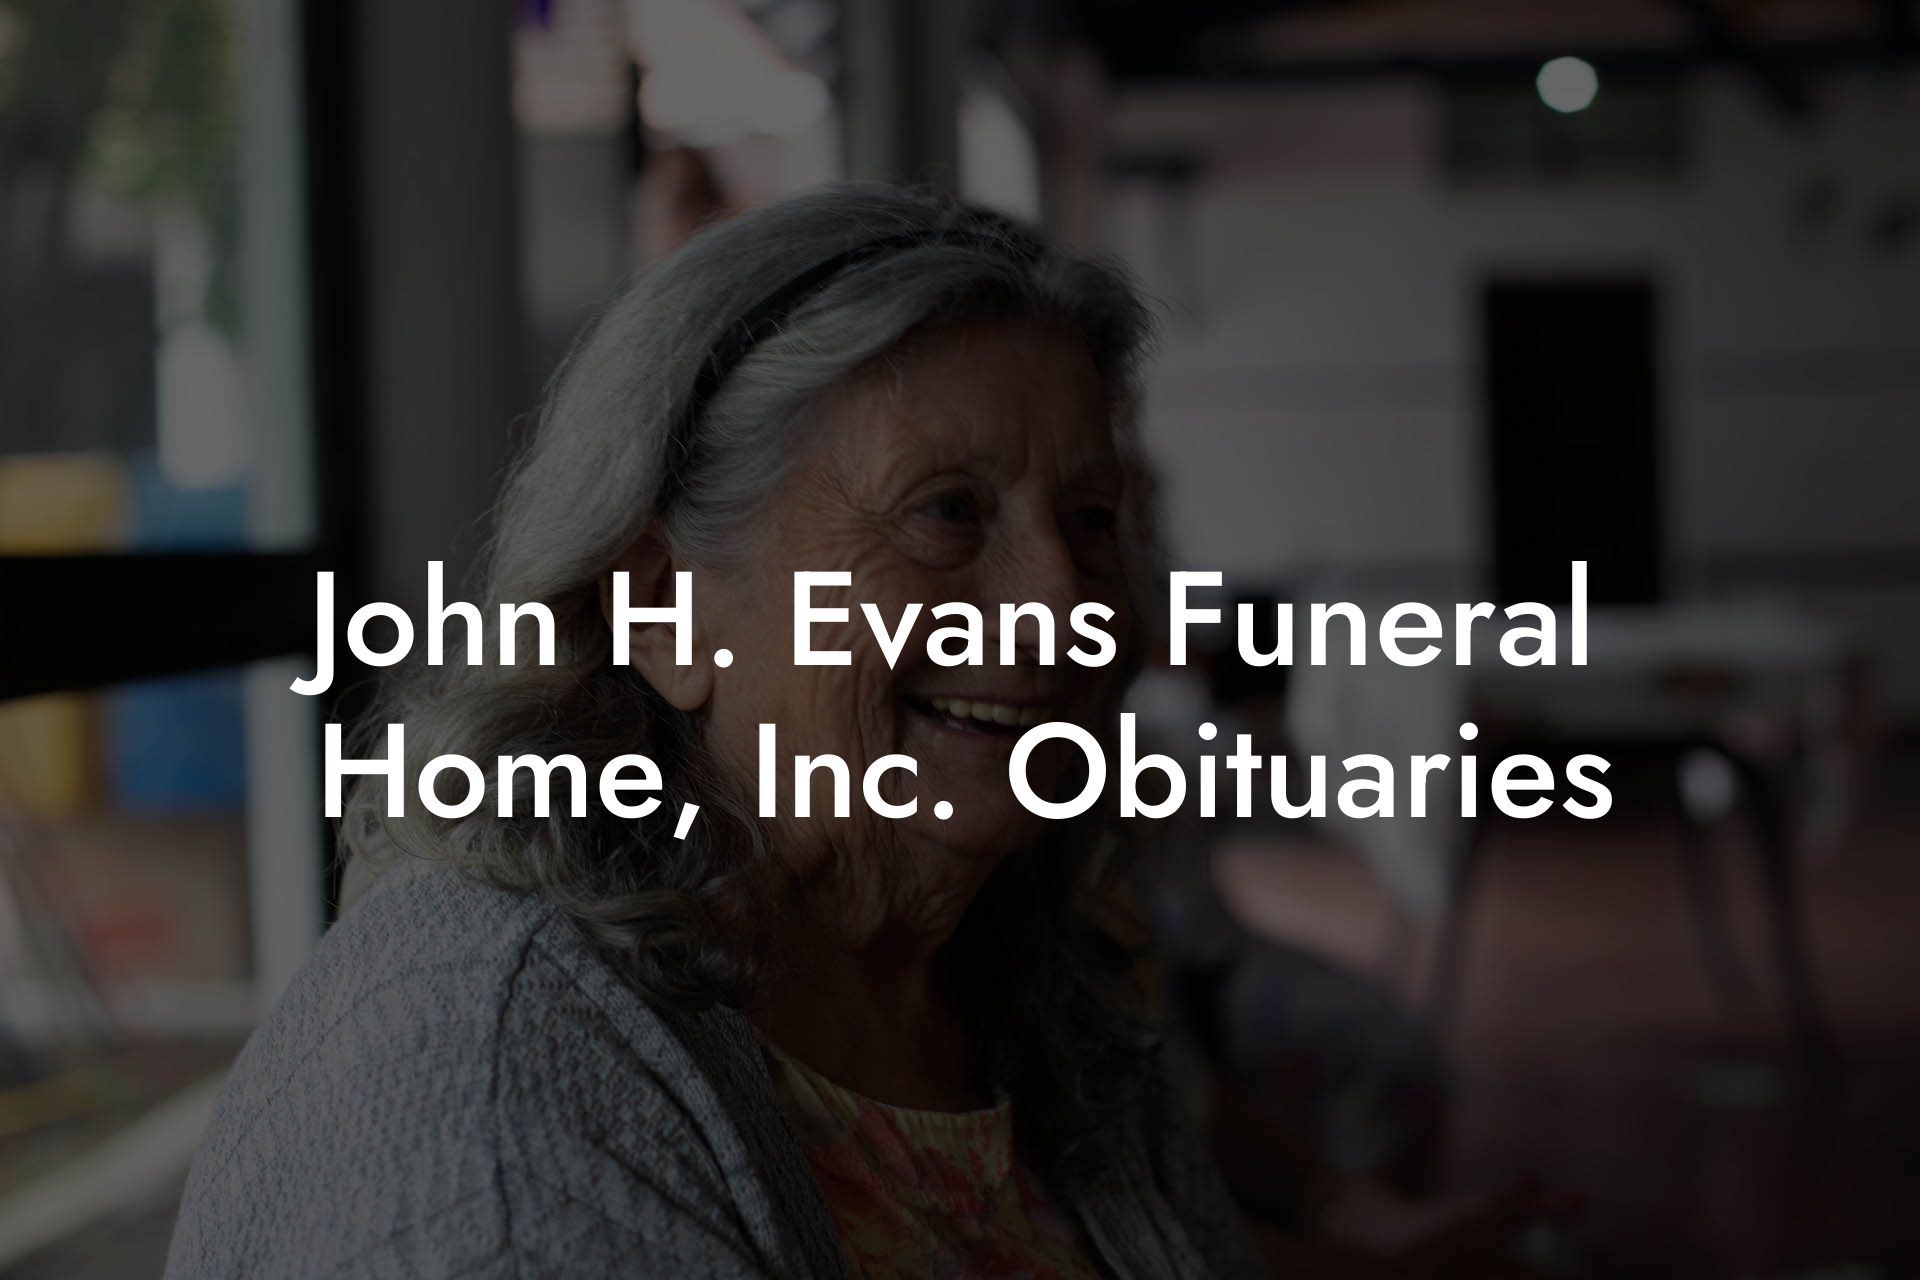 John H. Evans Funeral Home, Inc. Obituaries